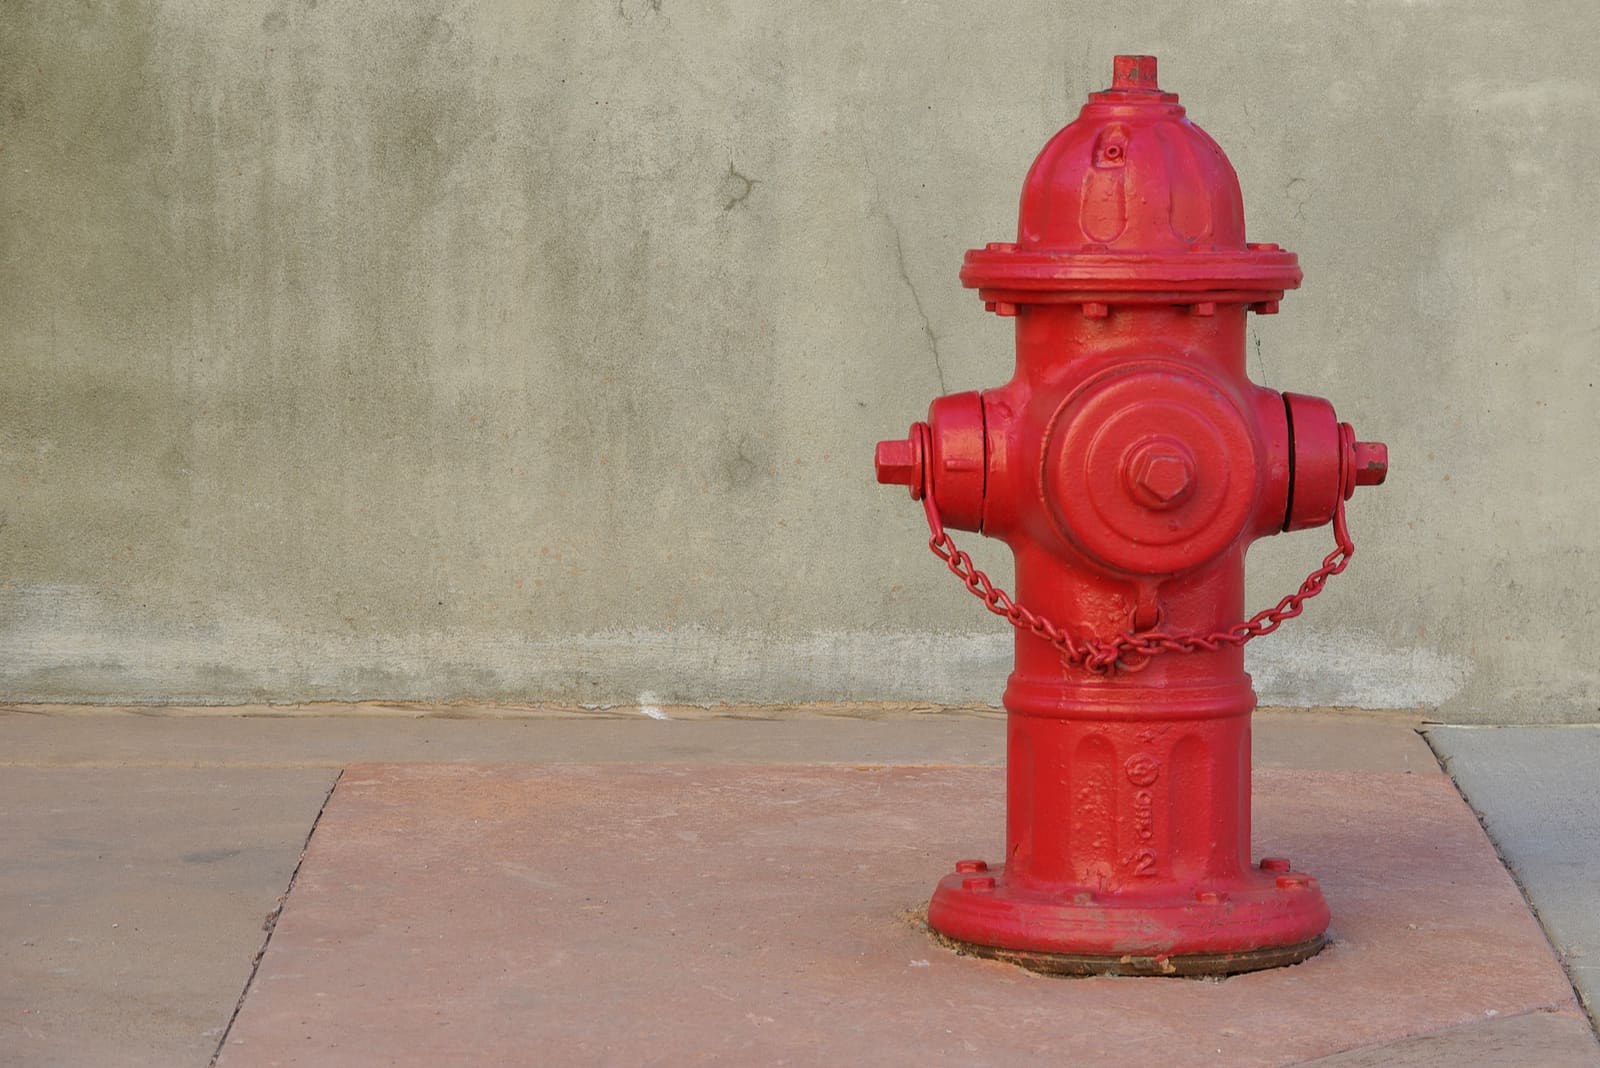 red fire hydrant on a sidewalk